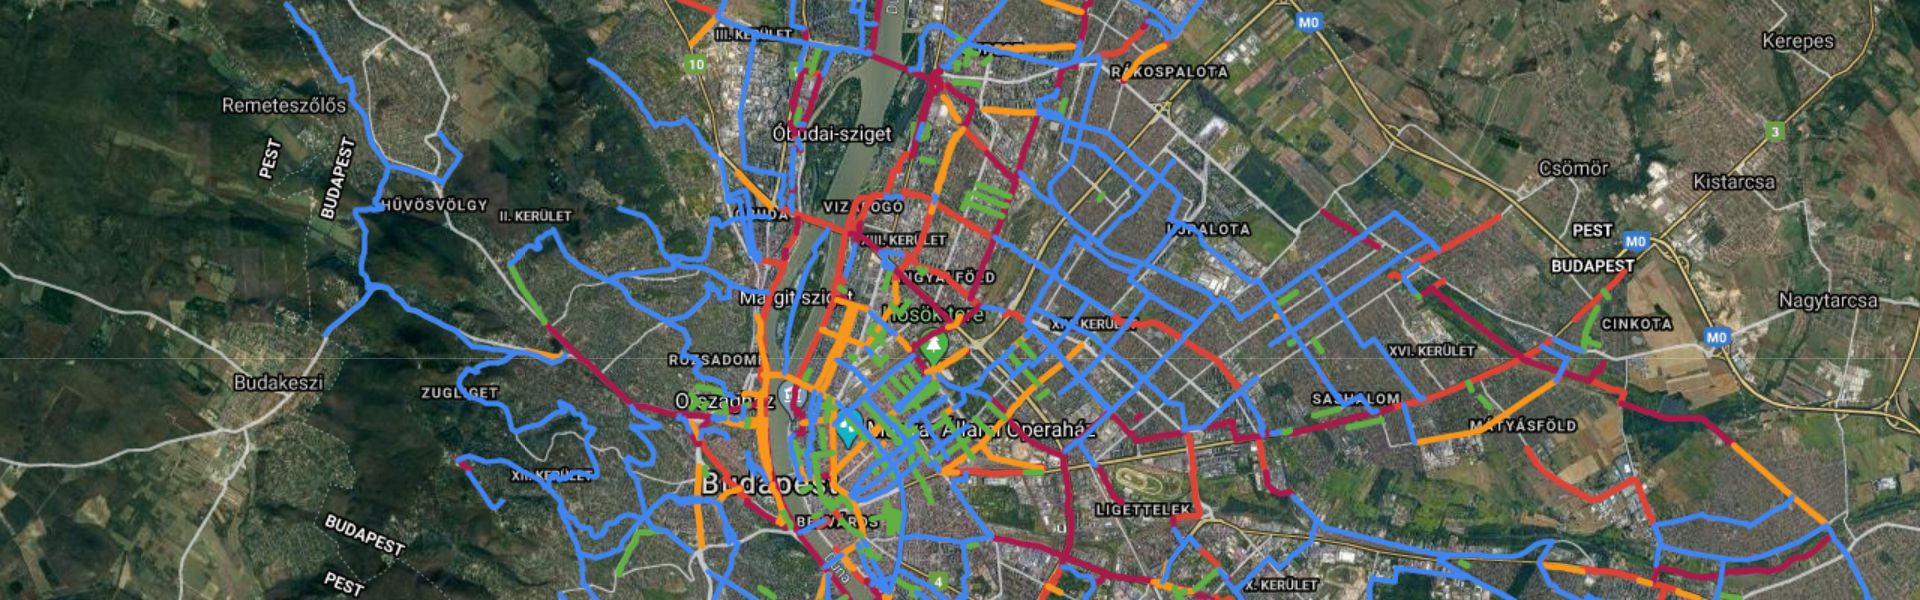 kerékpár budapest térkép Budapesti Kerekparut Terkep kerékpár budapest térkép